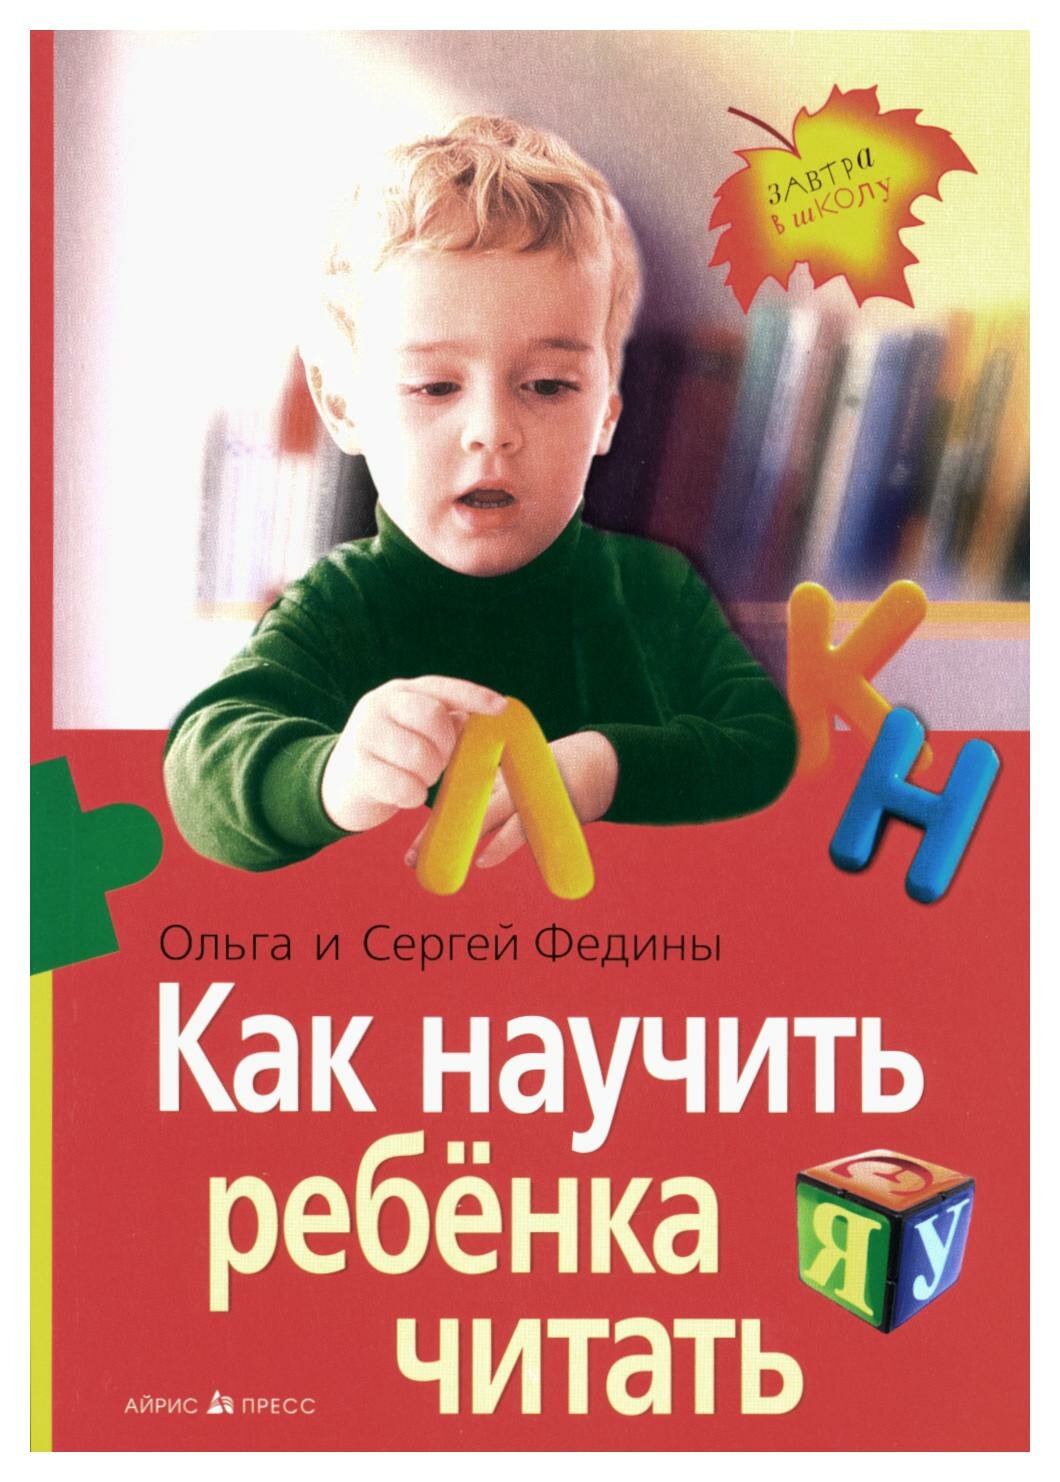 Как научить ребенка читать. Федин С. Н, Федина О. В. Айрис-пресс